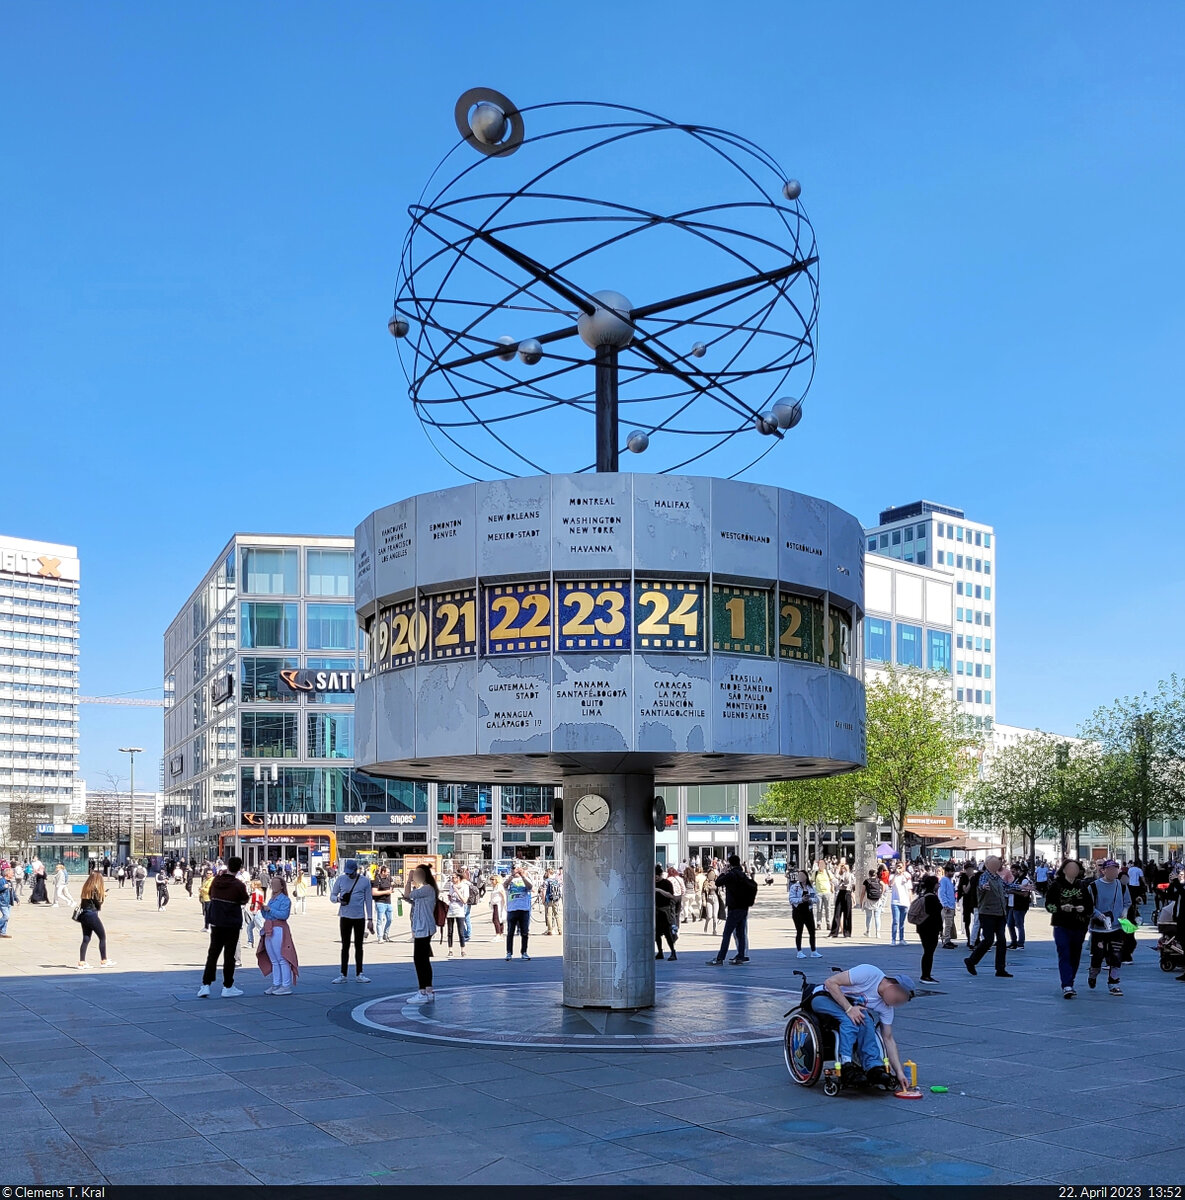 Wie sich unschwer erkennen lsst, ist die Urania-Weltzeituhr auf dem Berliner Alexanderplatz ein beliebter Treffpunkt. Seit 2015 steht sie unter Denkmalschutz.

🕓 22.4.2023 | 13:52 Uhr